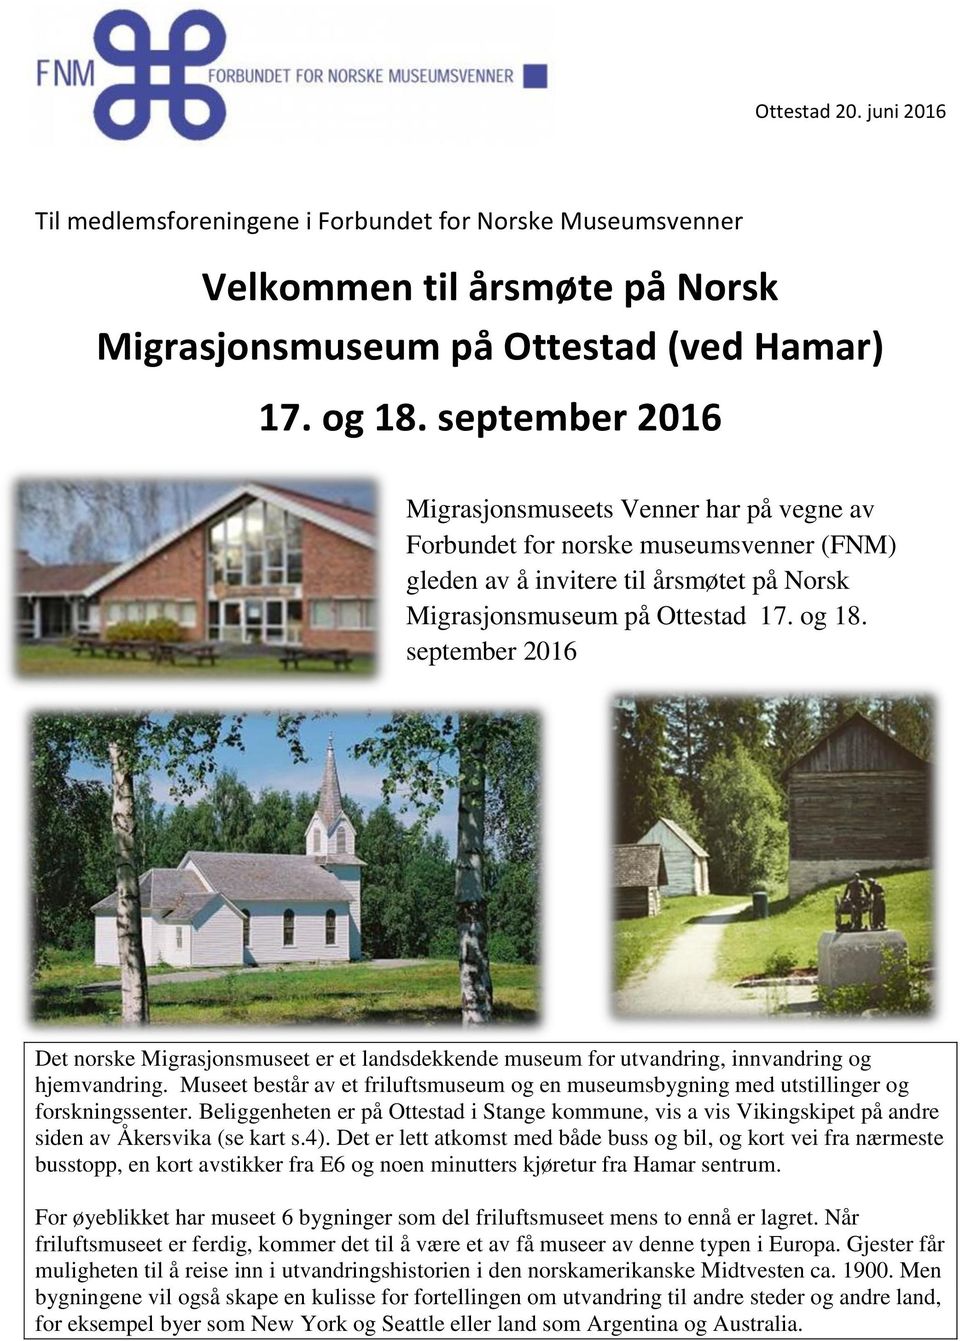 september 2016 Det norske Migrasjonsmuseet er et landsdekkende museum for utvandring, innvandring og hjemvandring.